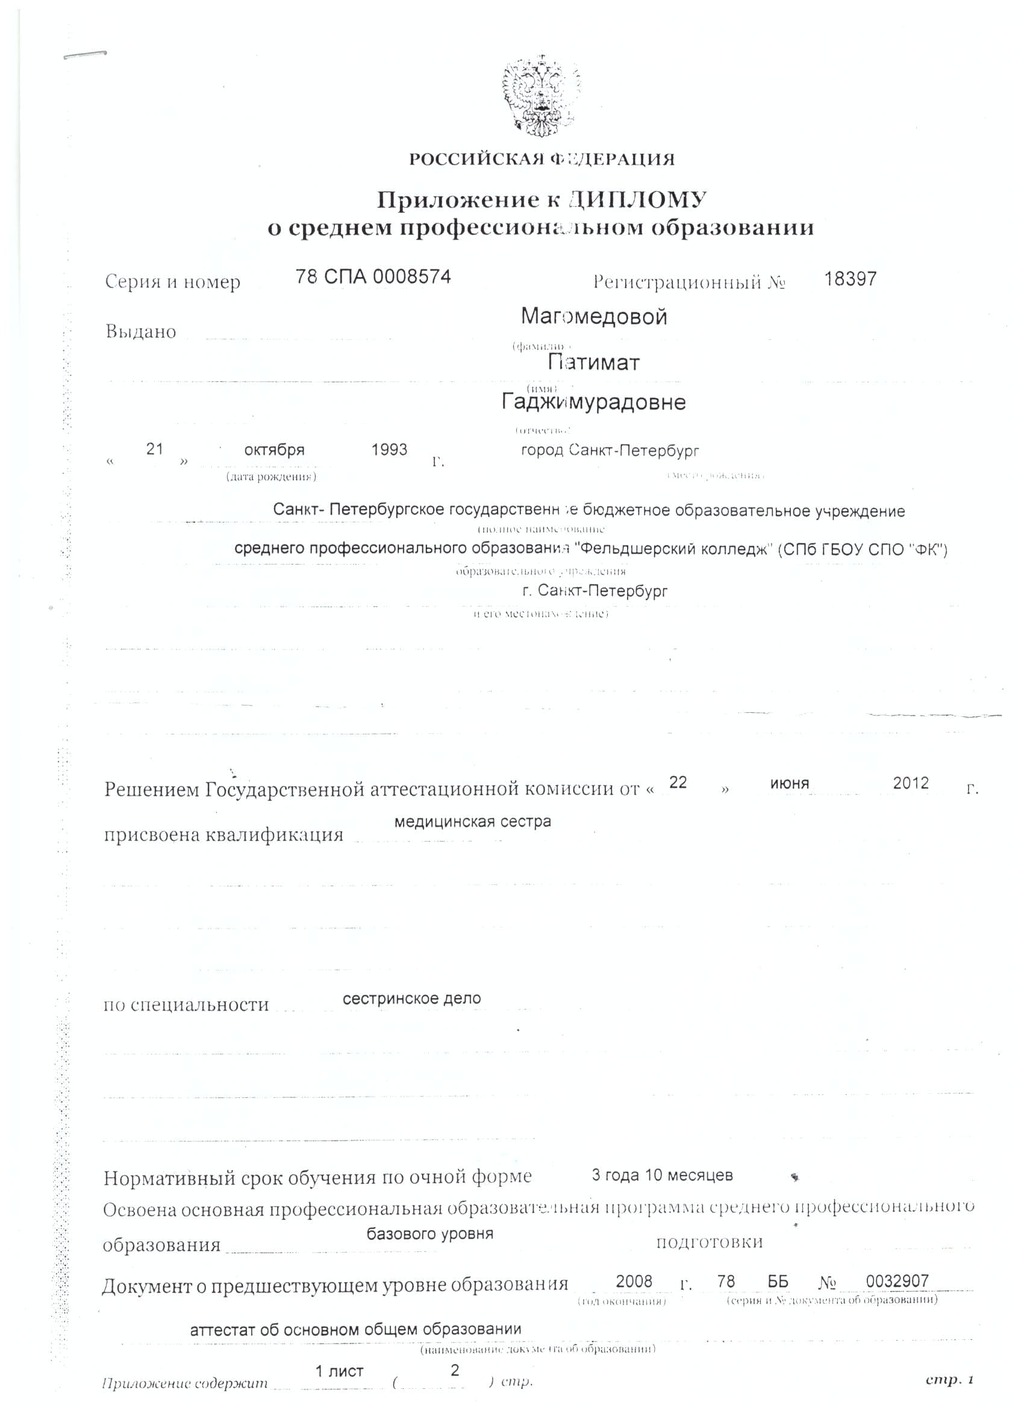 Документ подтверждающий что Патимат Гаджимурадовна Магомедова получил(а) диплом профильного образования по специальности сестринское дело